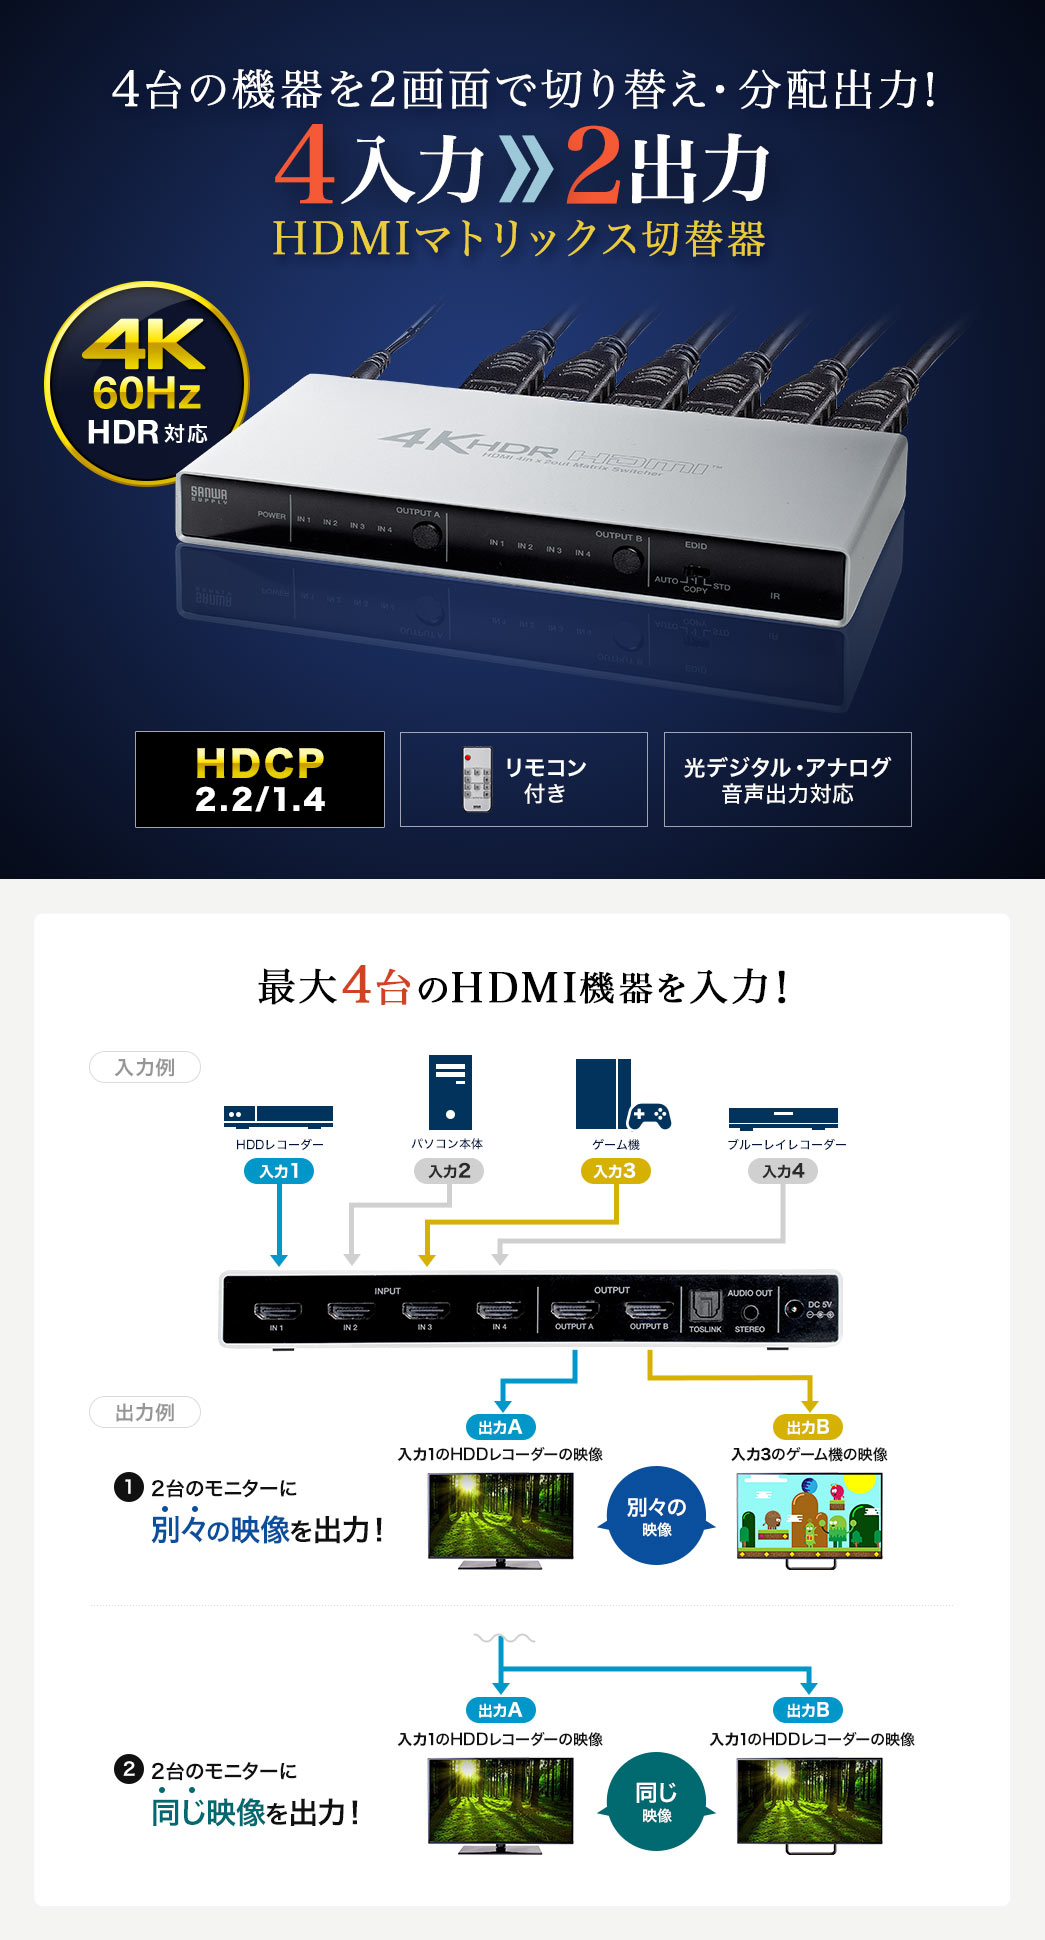 超熱 ショップグリーン 4入力4出力対応HDMIセレクター オーディオ イーサネット制御 4K 60Hz対応HDMI切替器  4x4マトリックススイッ